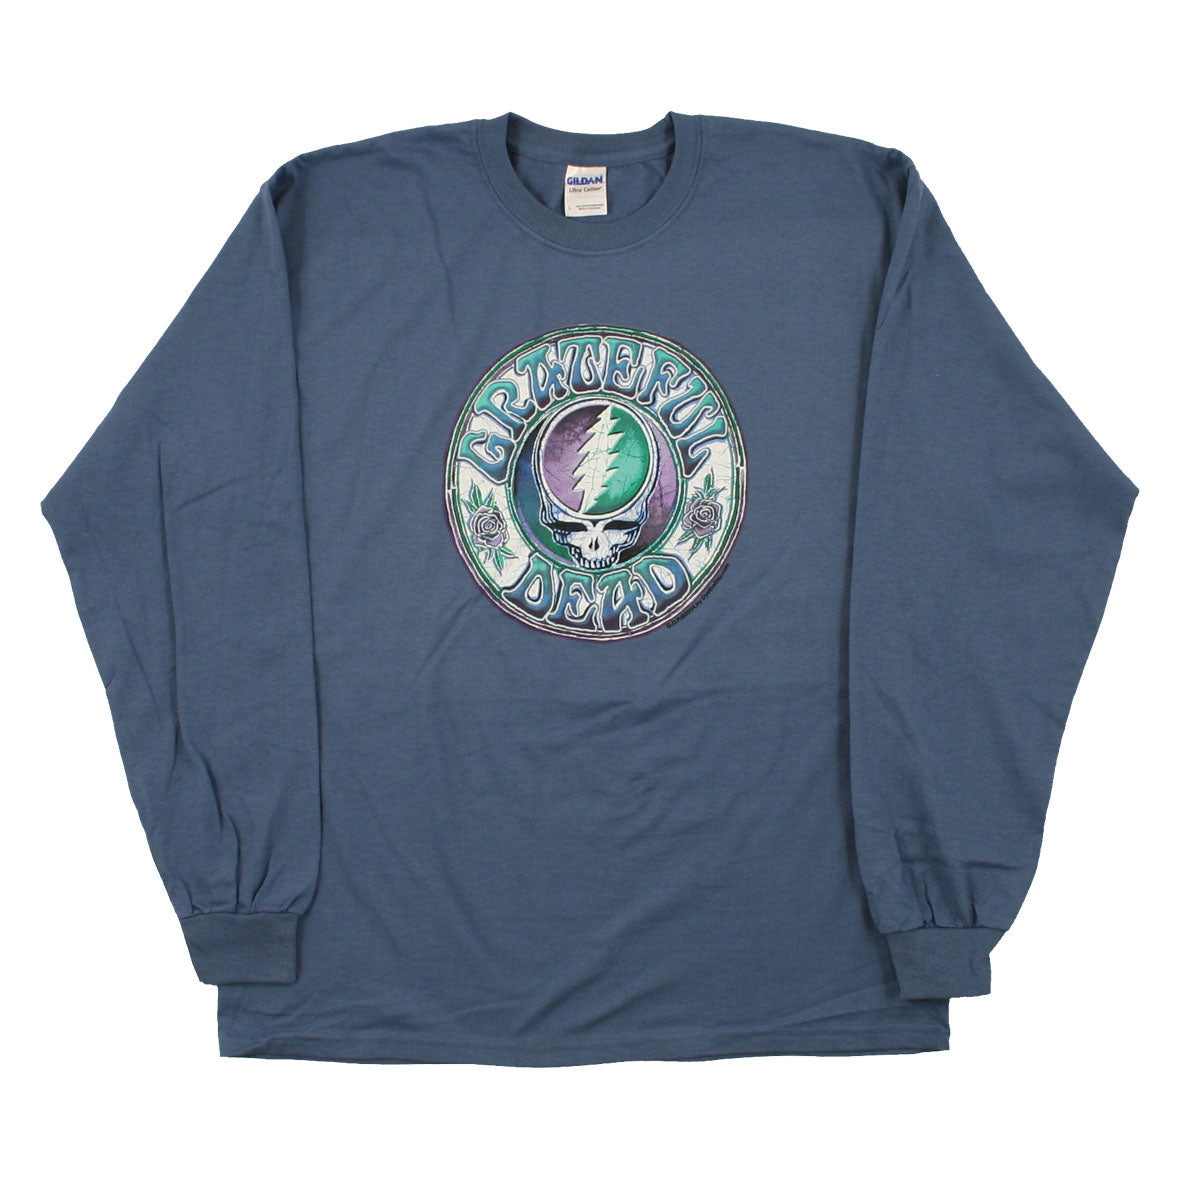 Grateful Dead Blue Rose Baseball T-Shirt, Collectible